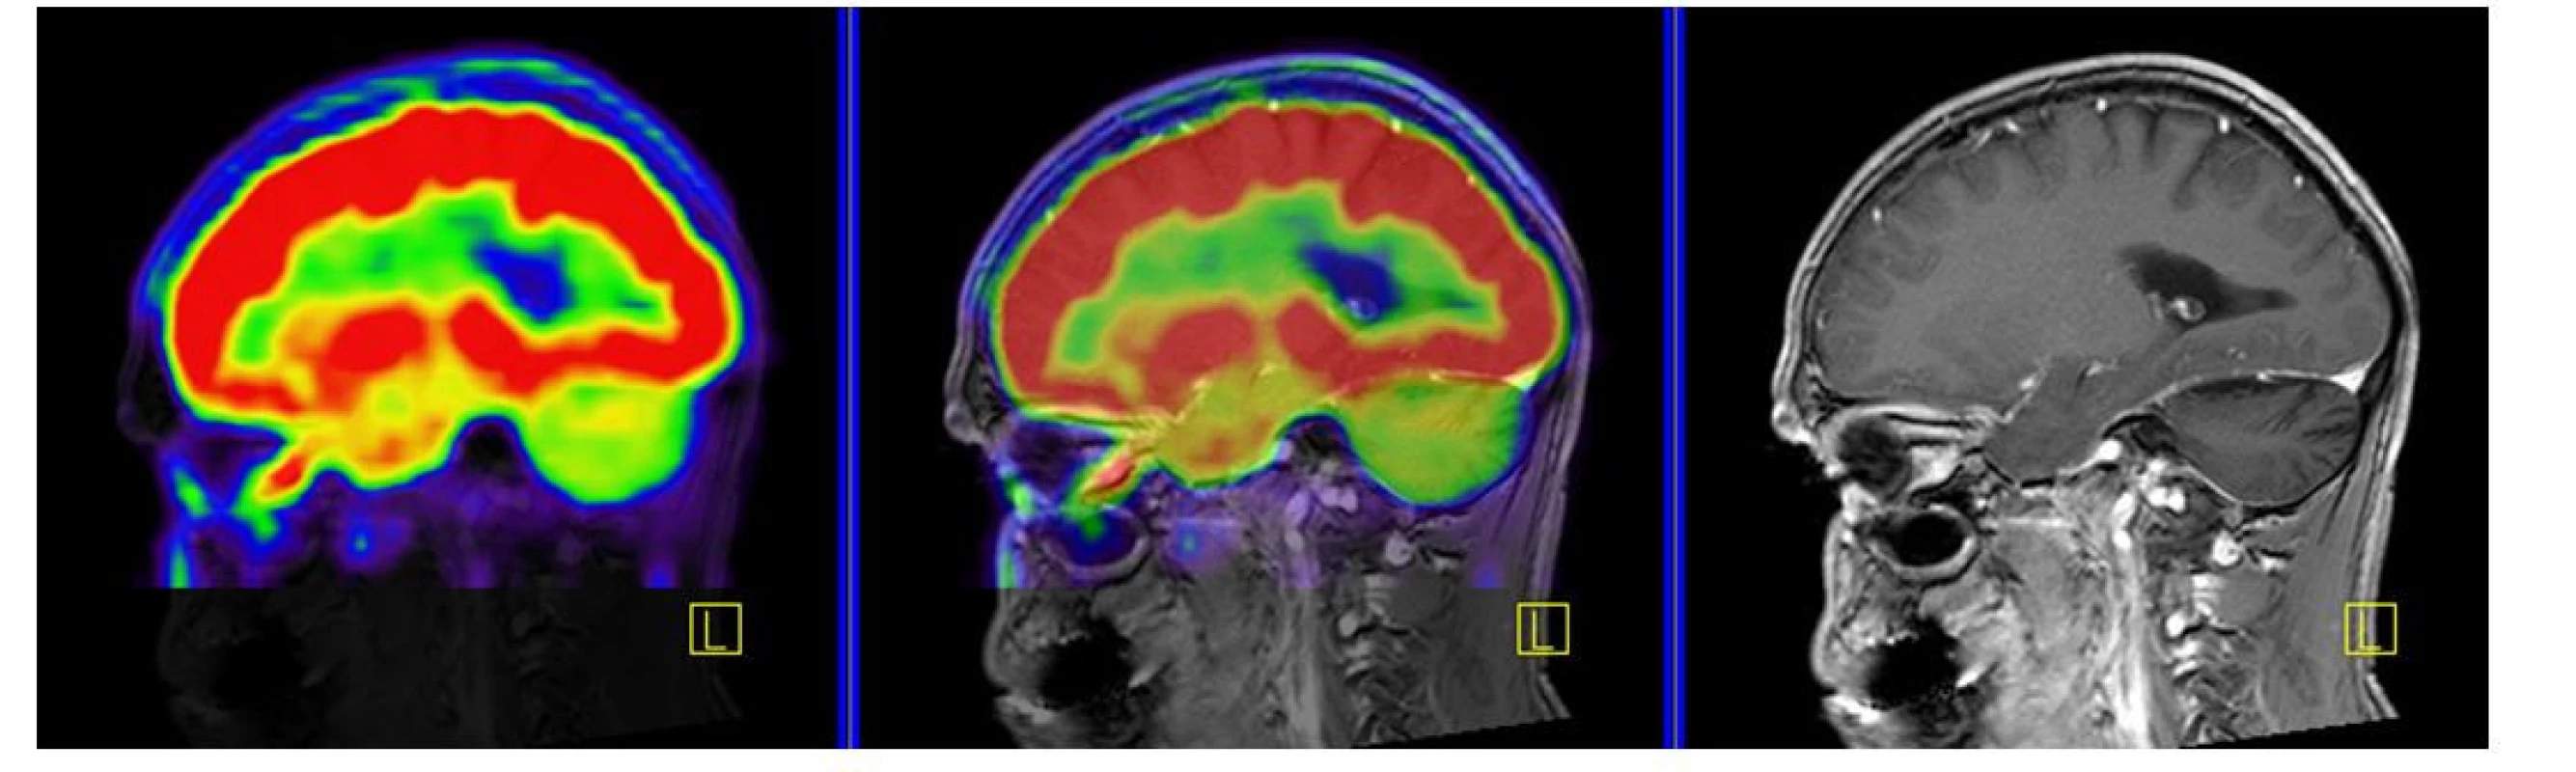 PET CT zobrazení mozku, červená barva znázorňuje intenzivní akumulaci fluorodeoxyglukózy (FDG), zatímco zelená barva odpovídá snížené
akumulaci FDG. V oblasti cerebella, které je postiženo neurodegenerativními změnami, je zřetelné výrazně snížené vychytávání FDG a neurodegenerativní
změny byly u tohoto pacienta zřetelné i na MR zobrazení